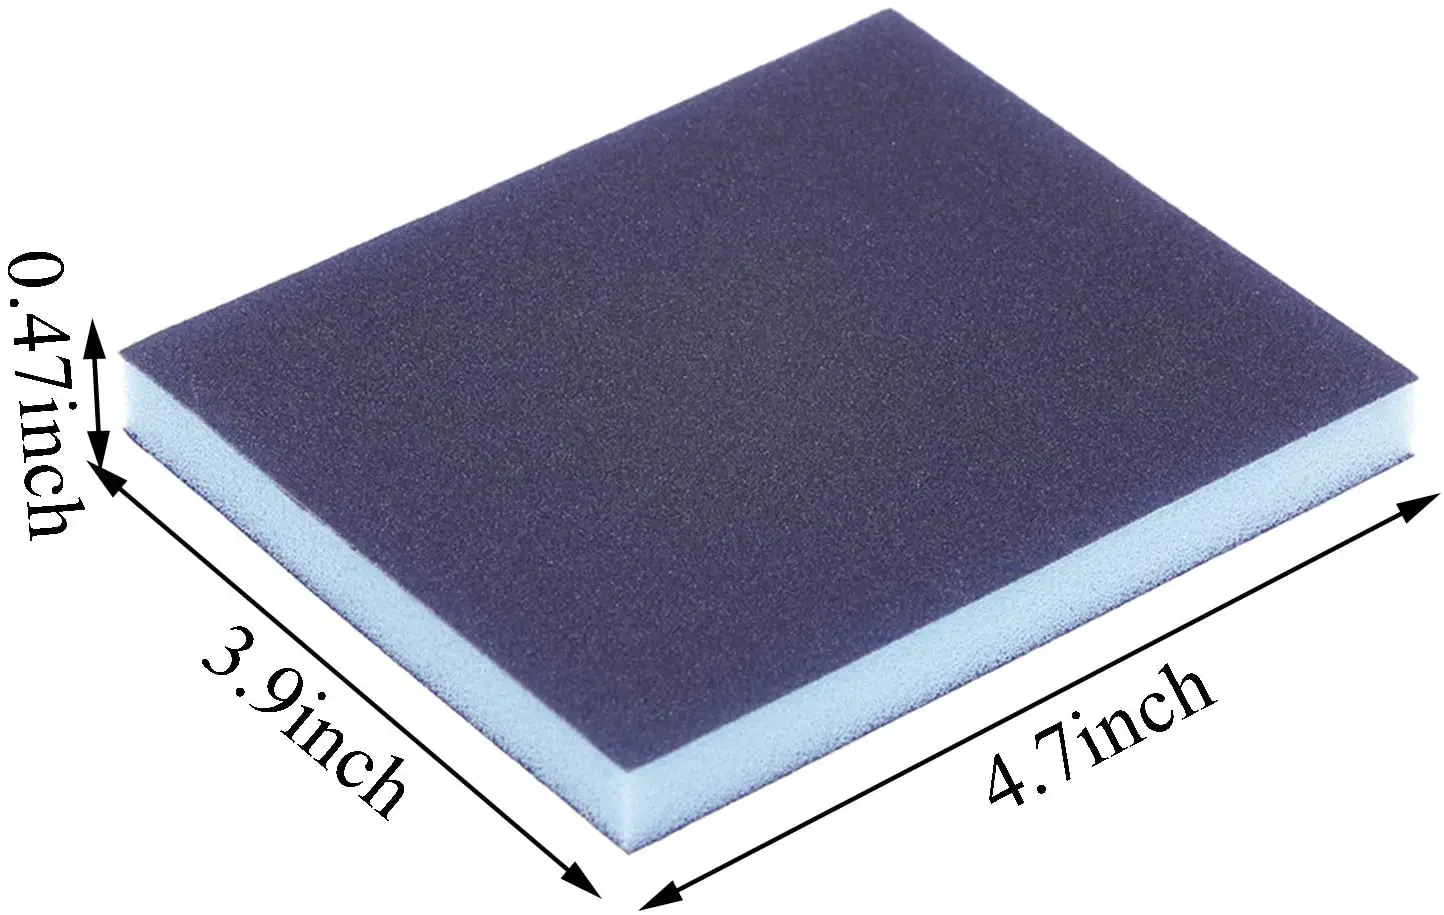 Aluminum Brown 60#~600# Abrasive Sand Paper Sponge Wet and Dry Use Polishing Flexible Blocks Sanding Sponge